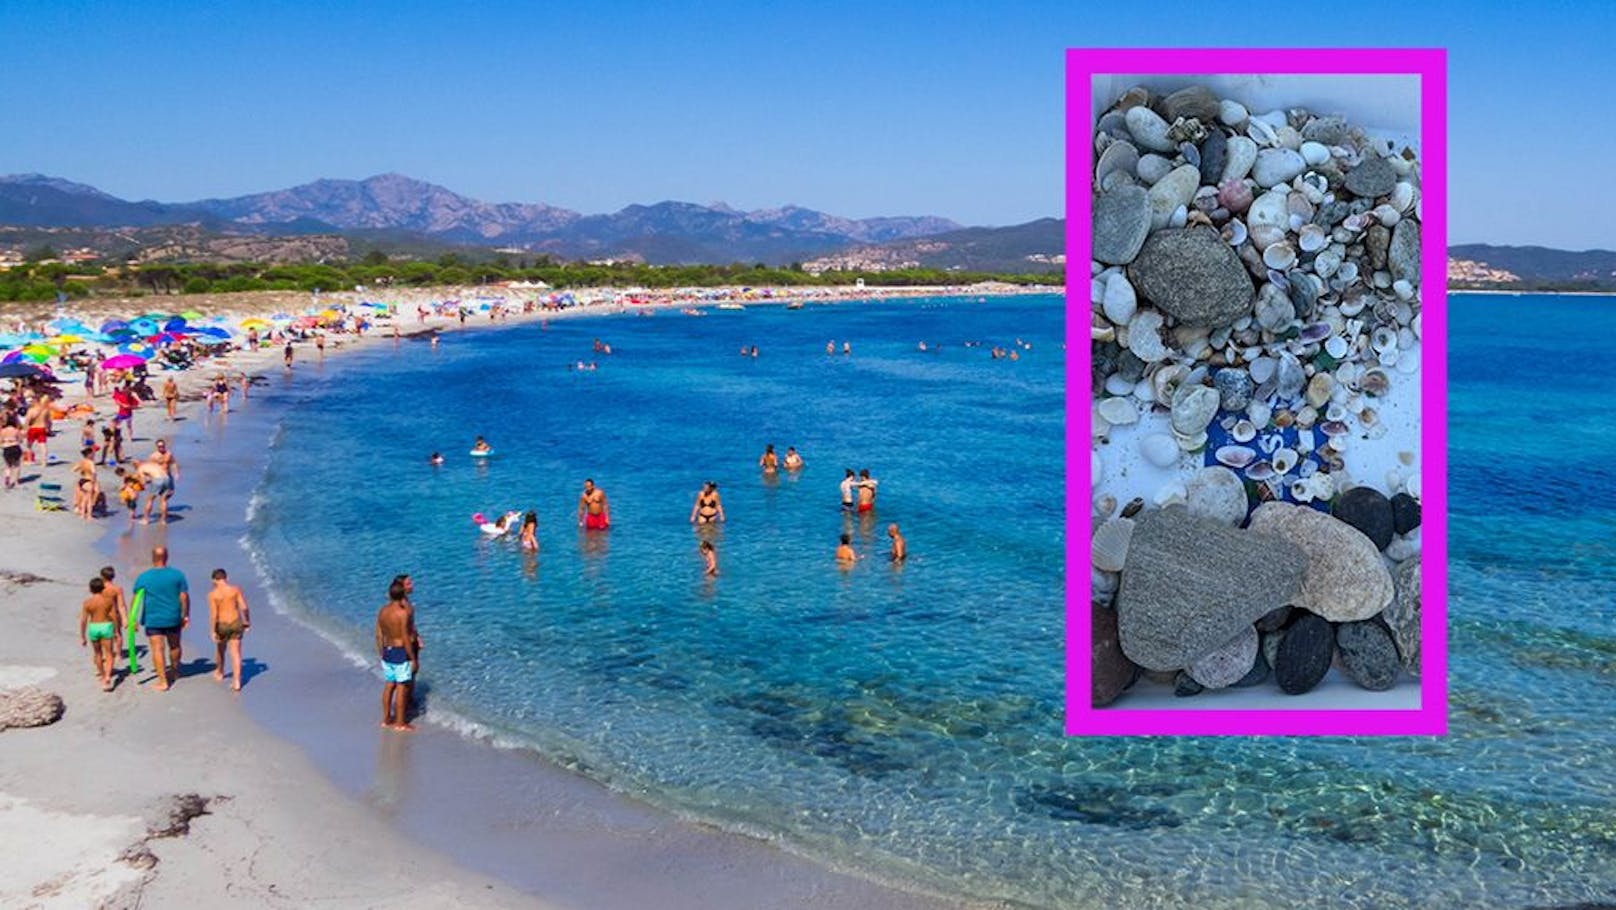 Steine eingepackt – Touristen auf Sardinien angezeigt